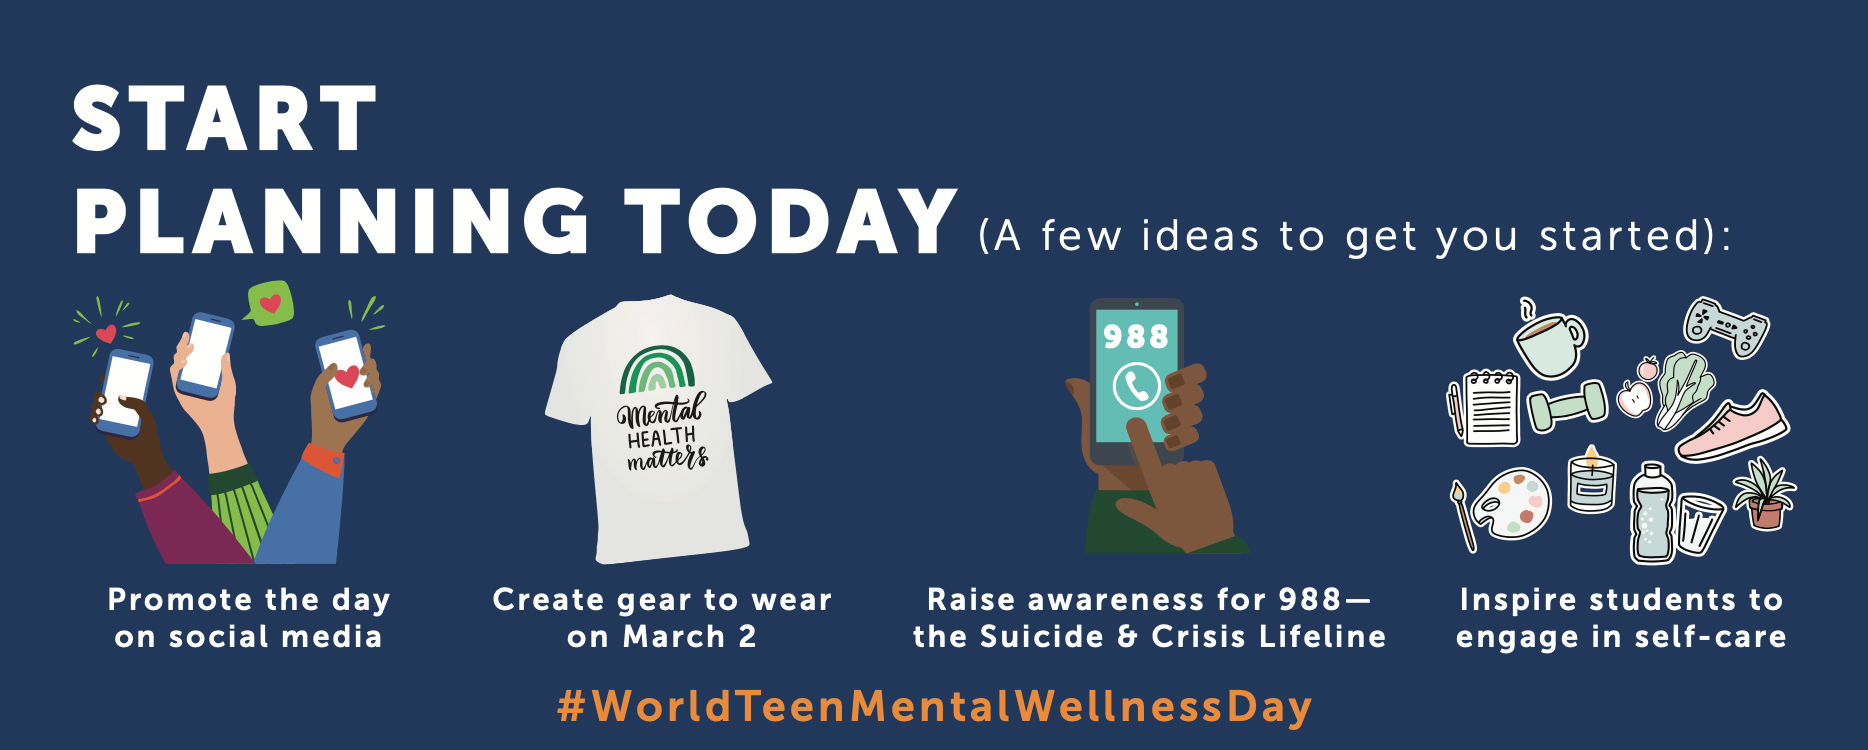 World Teen Mental Wellness Day Ideas